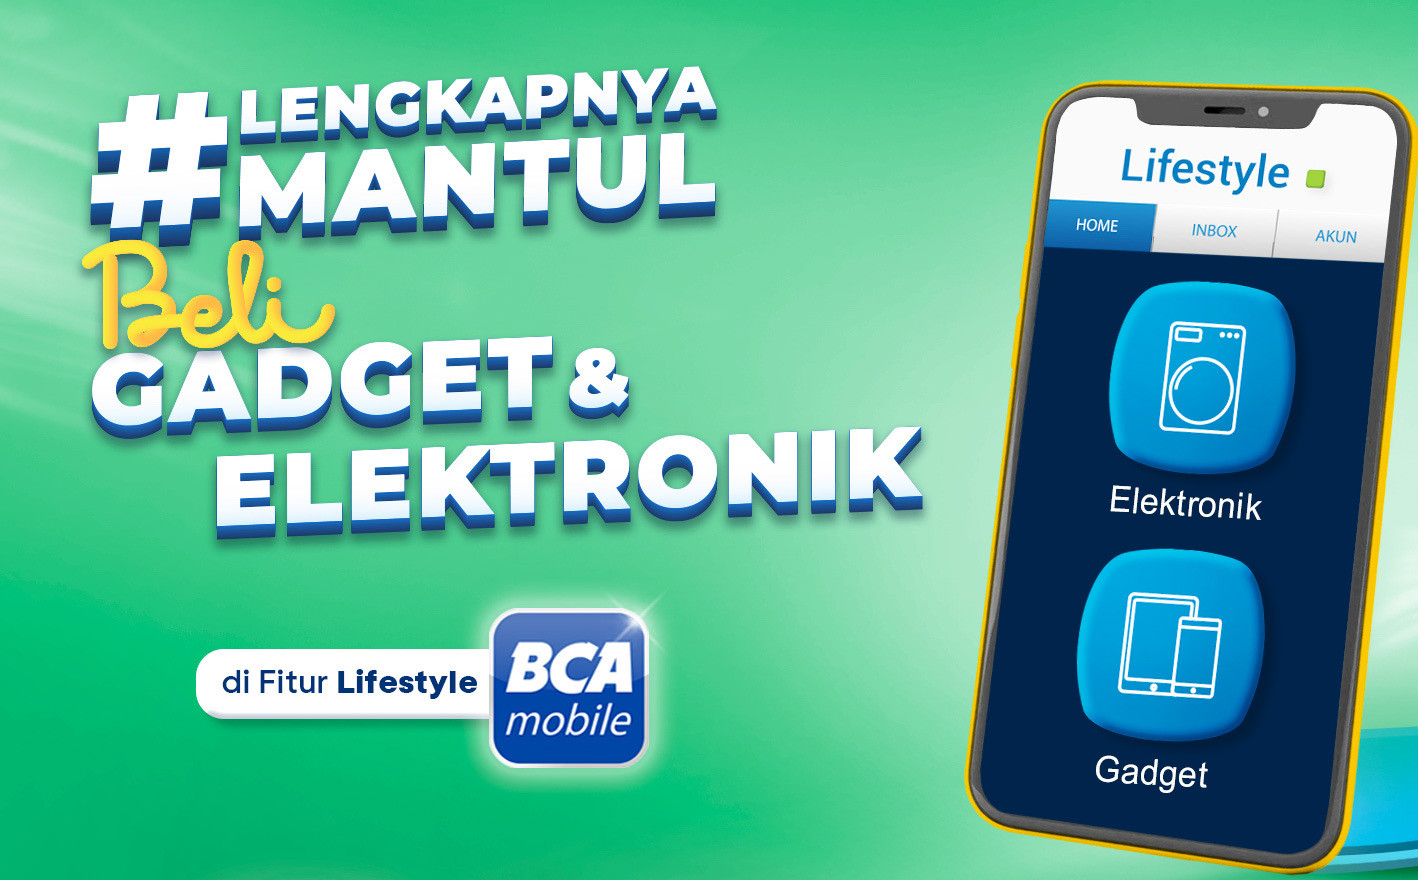 BCA mobile tambah fitur belanja gadget & elektronik